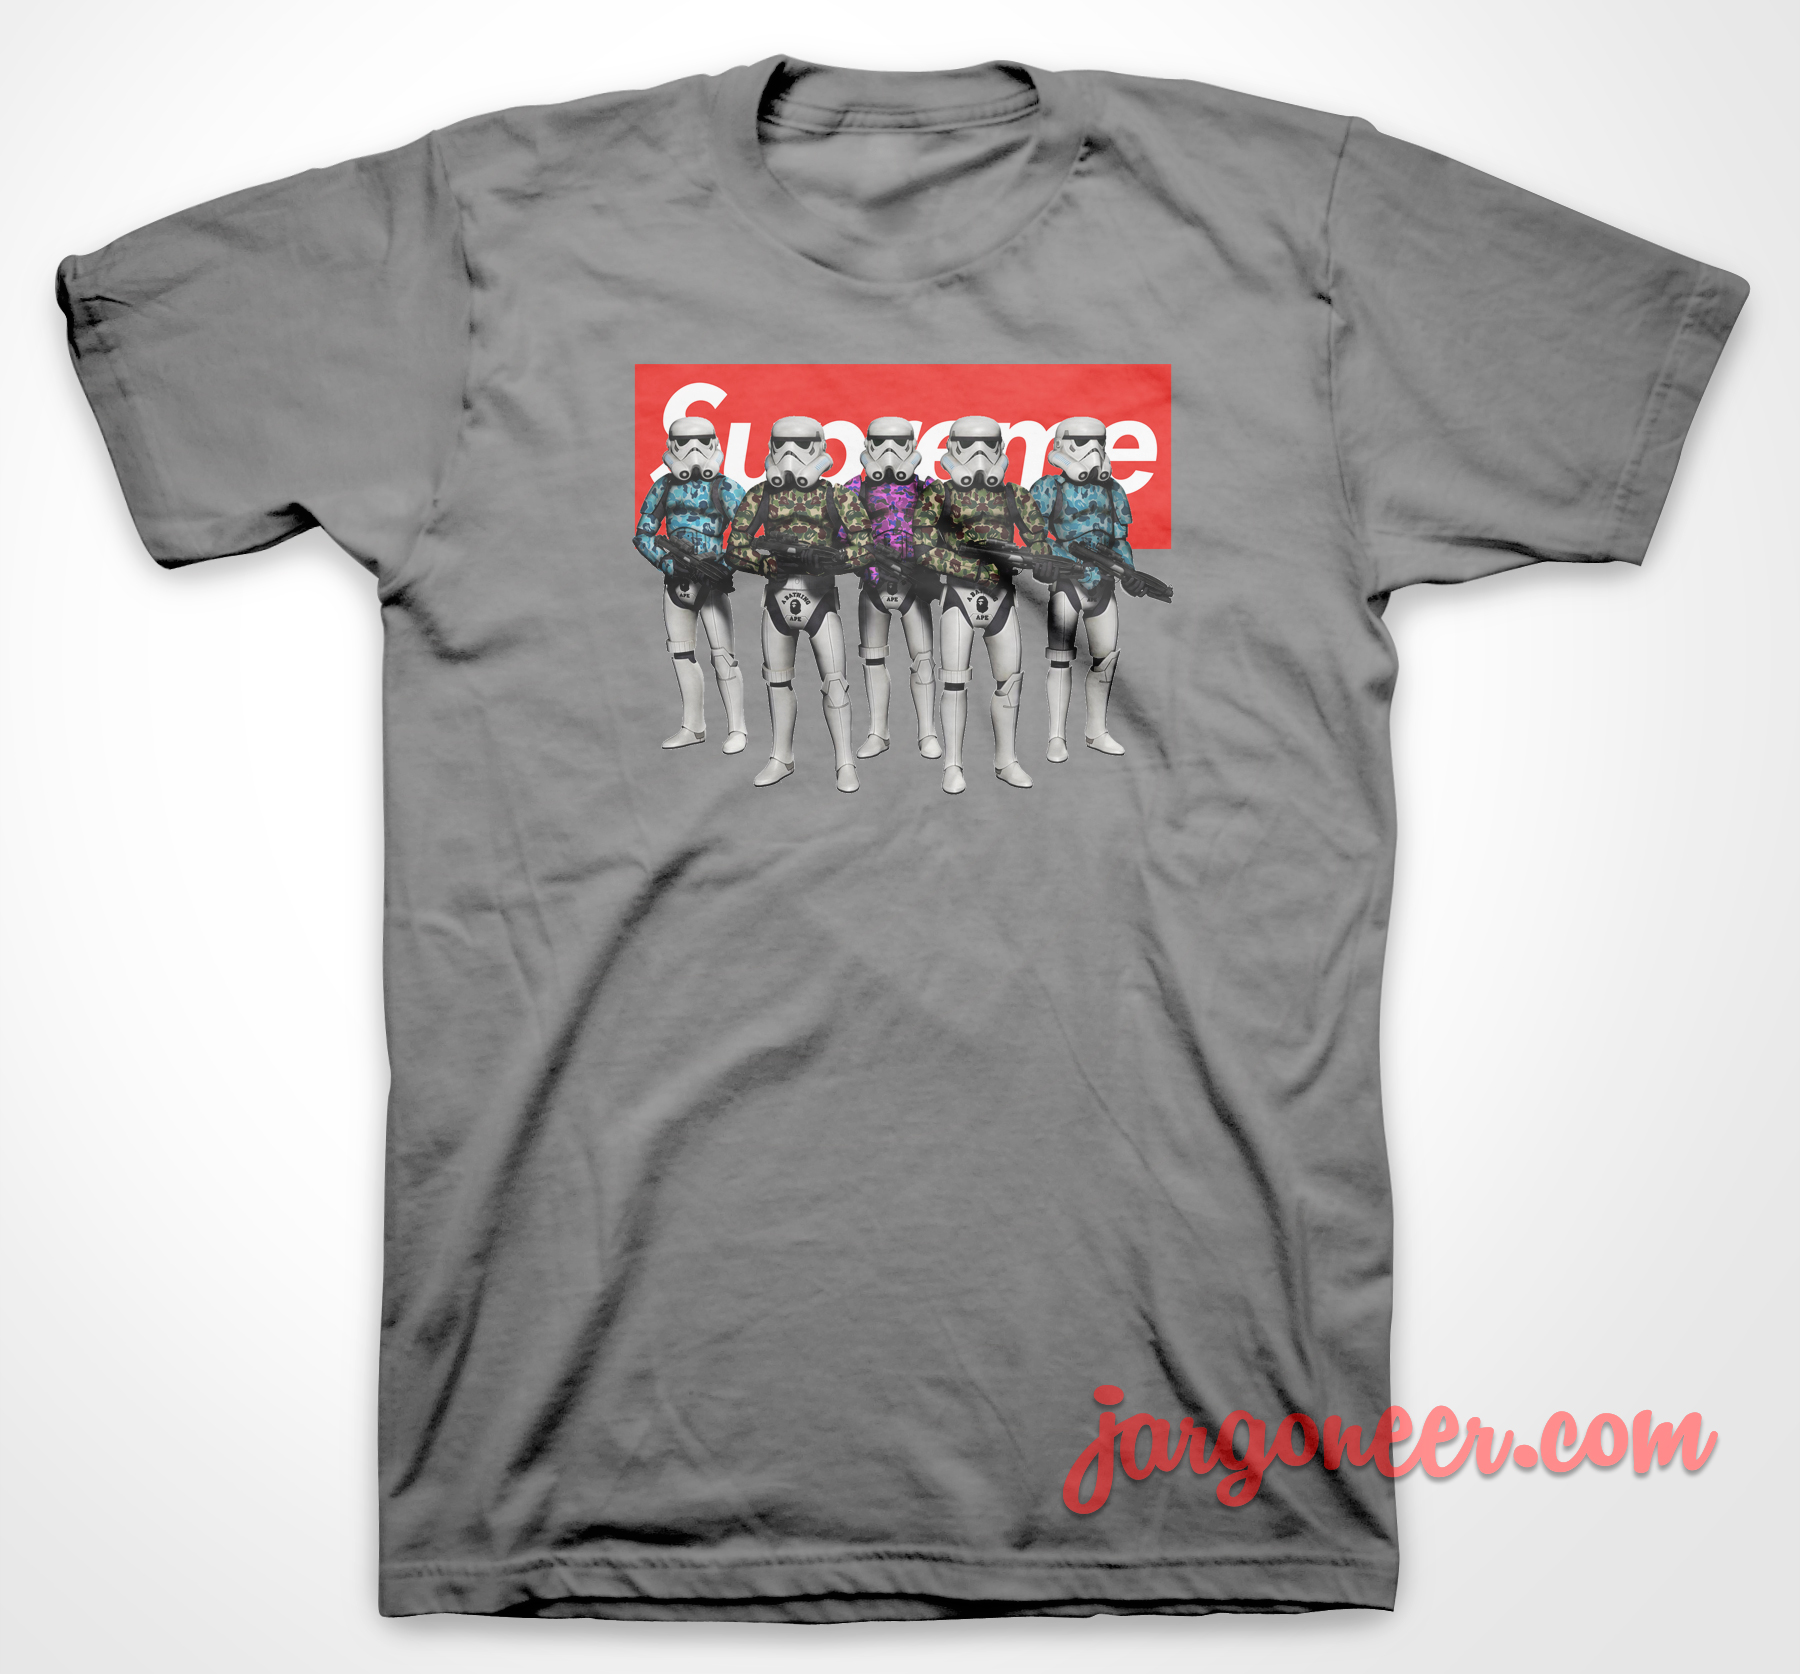 Stormtroopers bape - Shop Unique Graphic Cool Shirt Designs